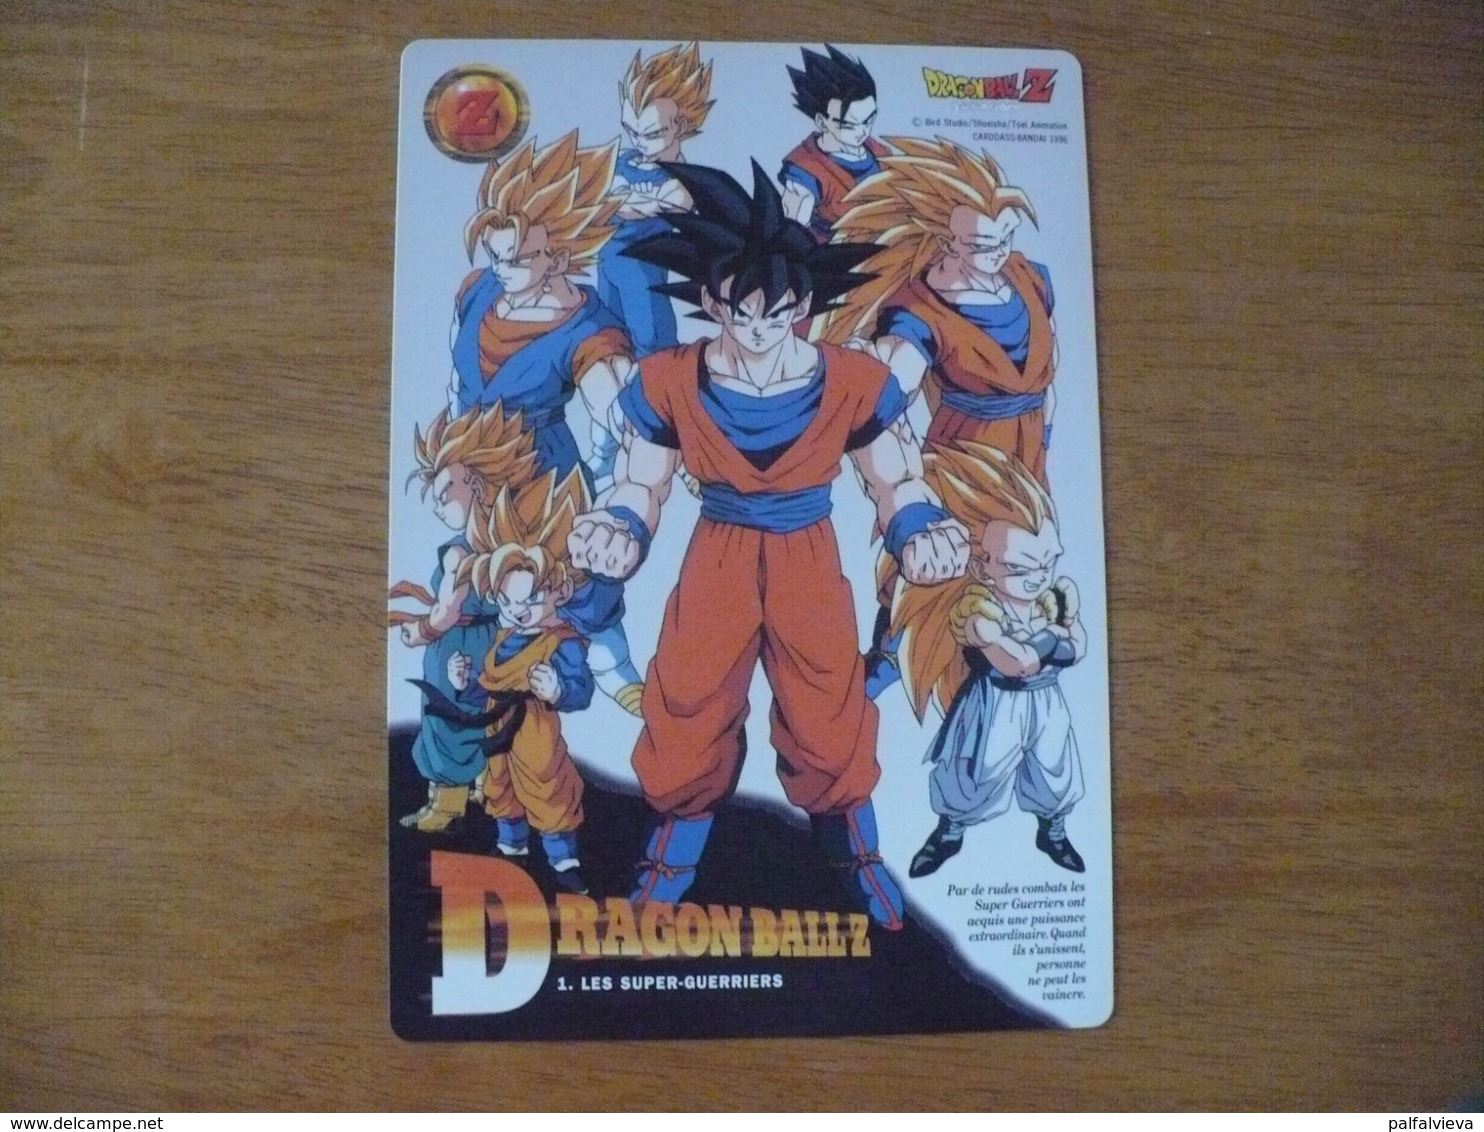 Anime / Manga Trading Card: Dragon Ball 1. (Jumbo) - Dragonball Z